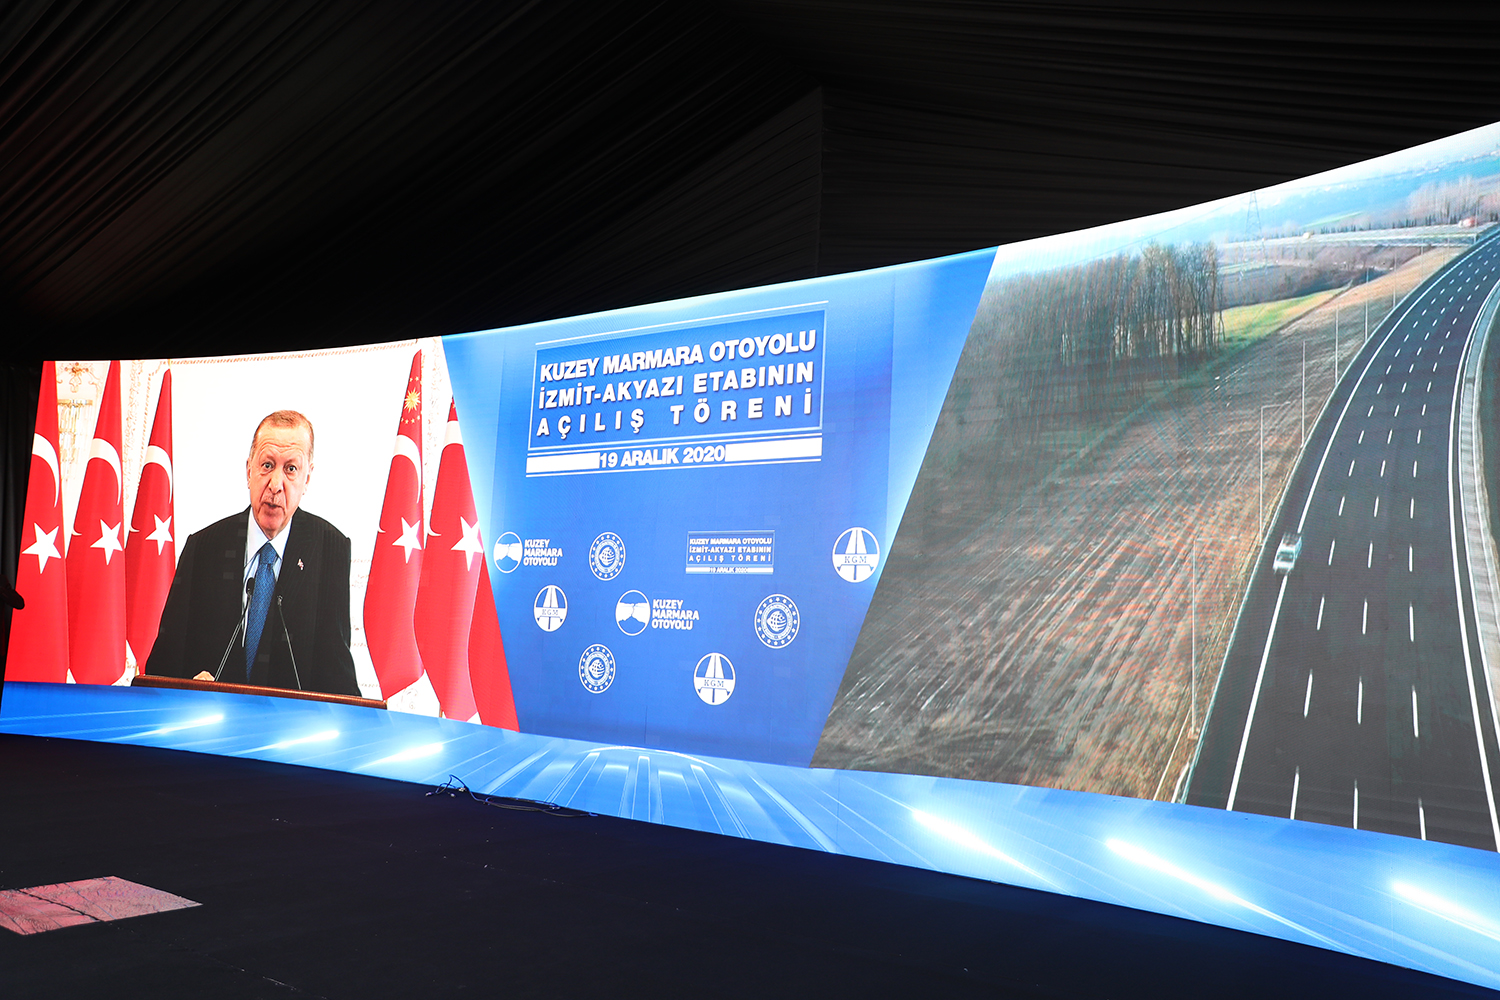 “Kuzey Marmara Otoyolu ülkemize ve milletimize hayırlı olsun”